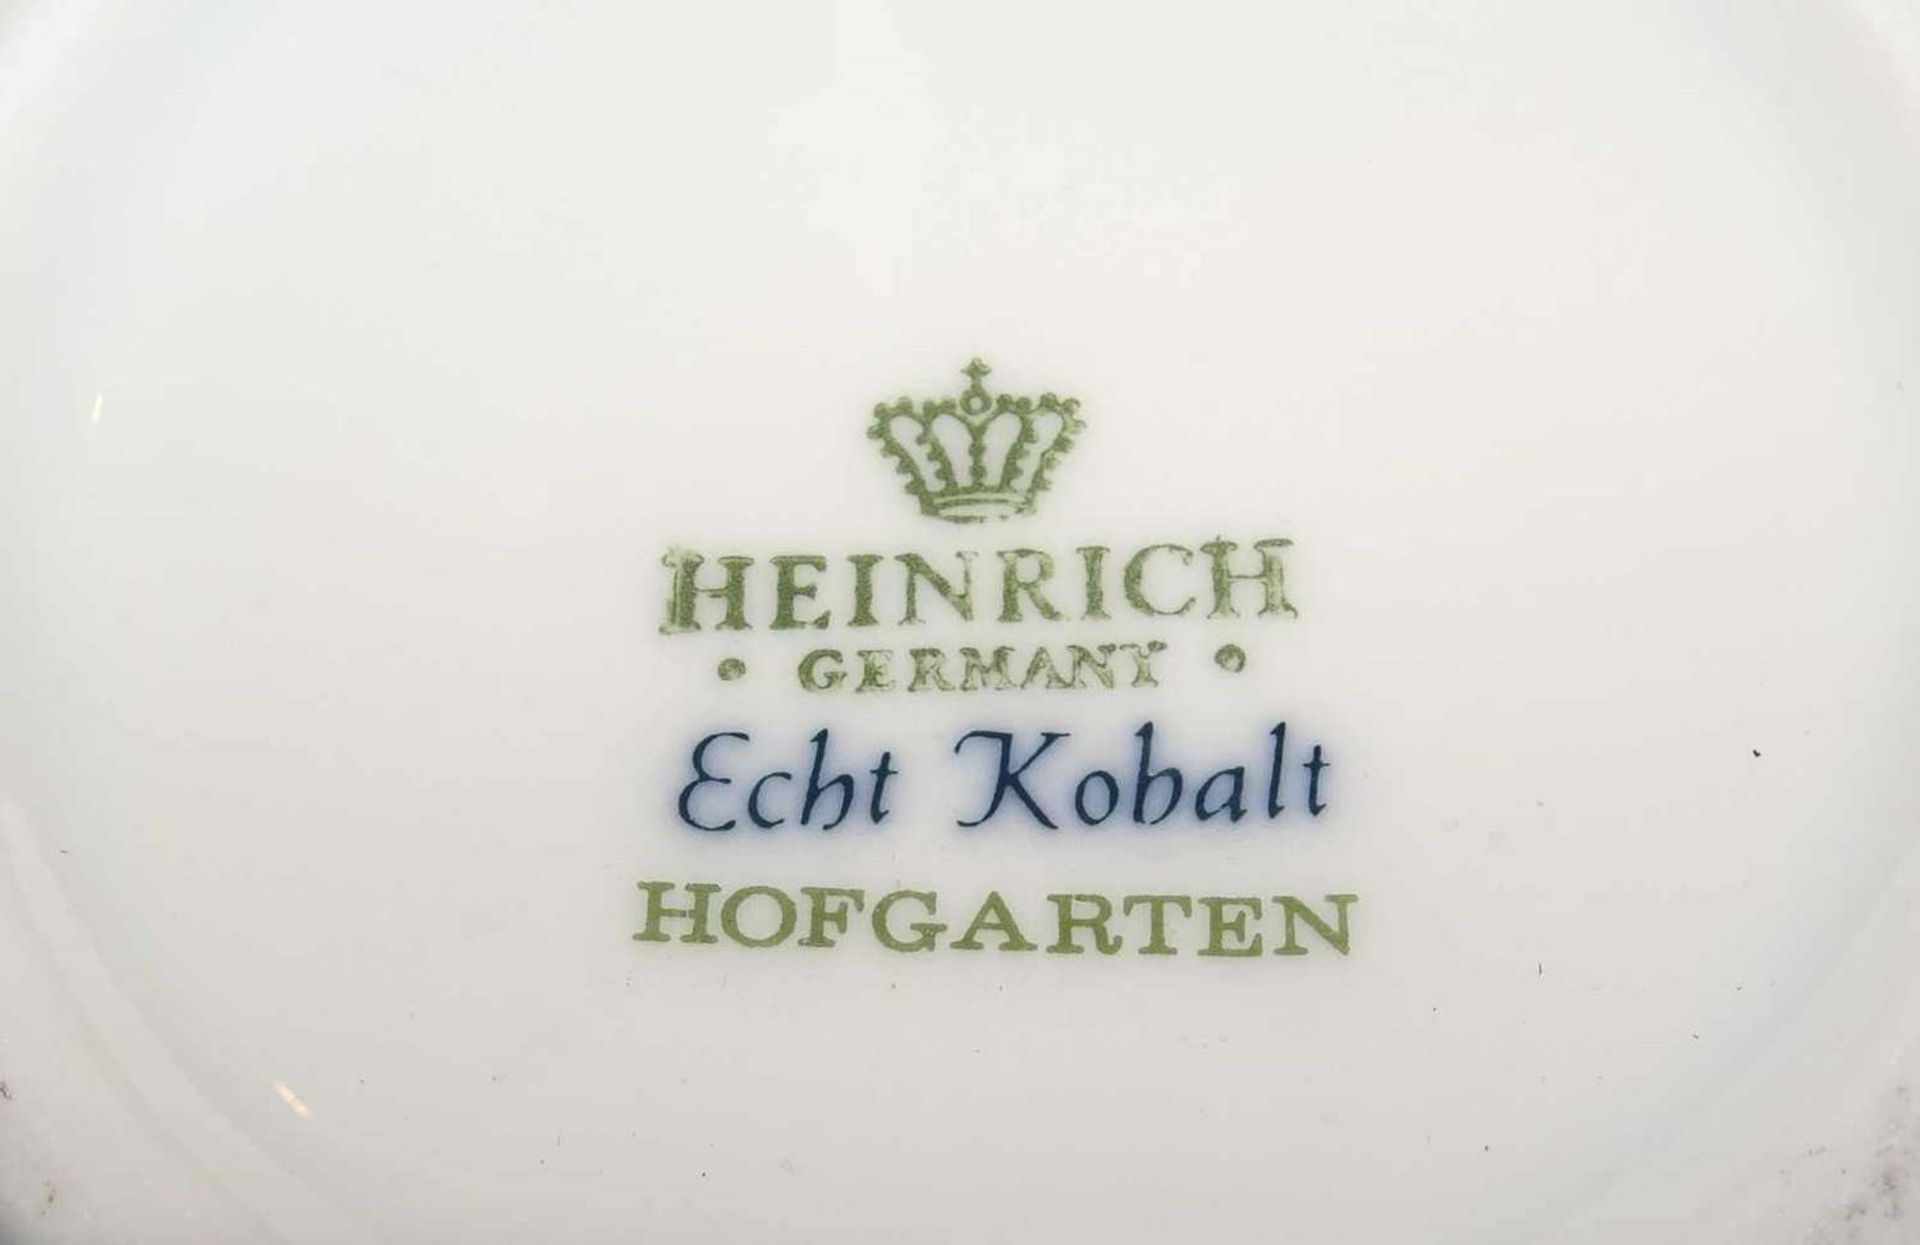 1 Lot Porzellan, dabei 1 Deckelvase Heinrich Porzellan Echt Kobalt Hofgarten, 1 Durchbruchschale " - Bild 3 aus 3